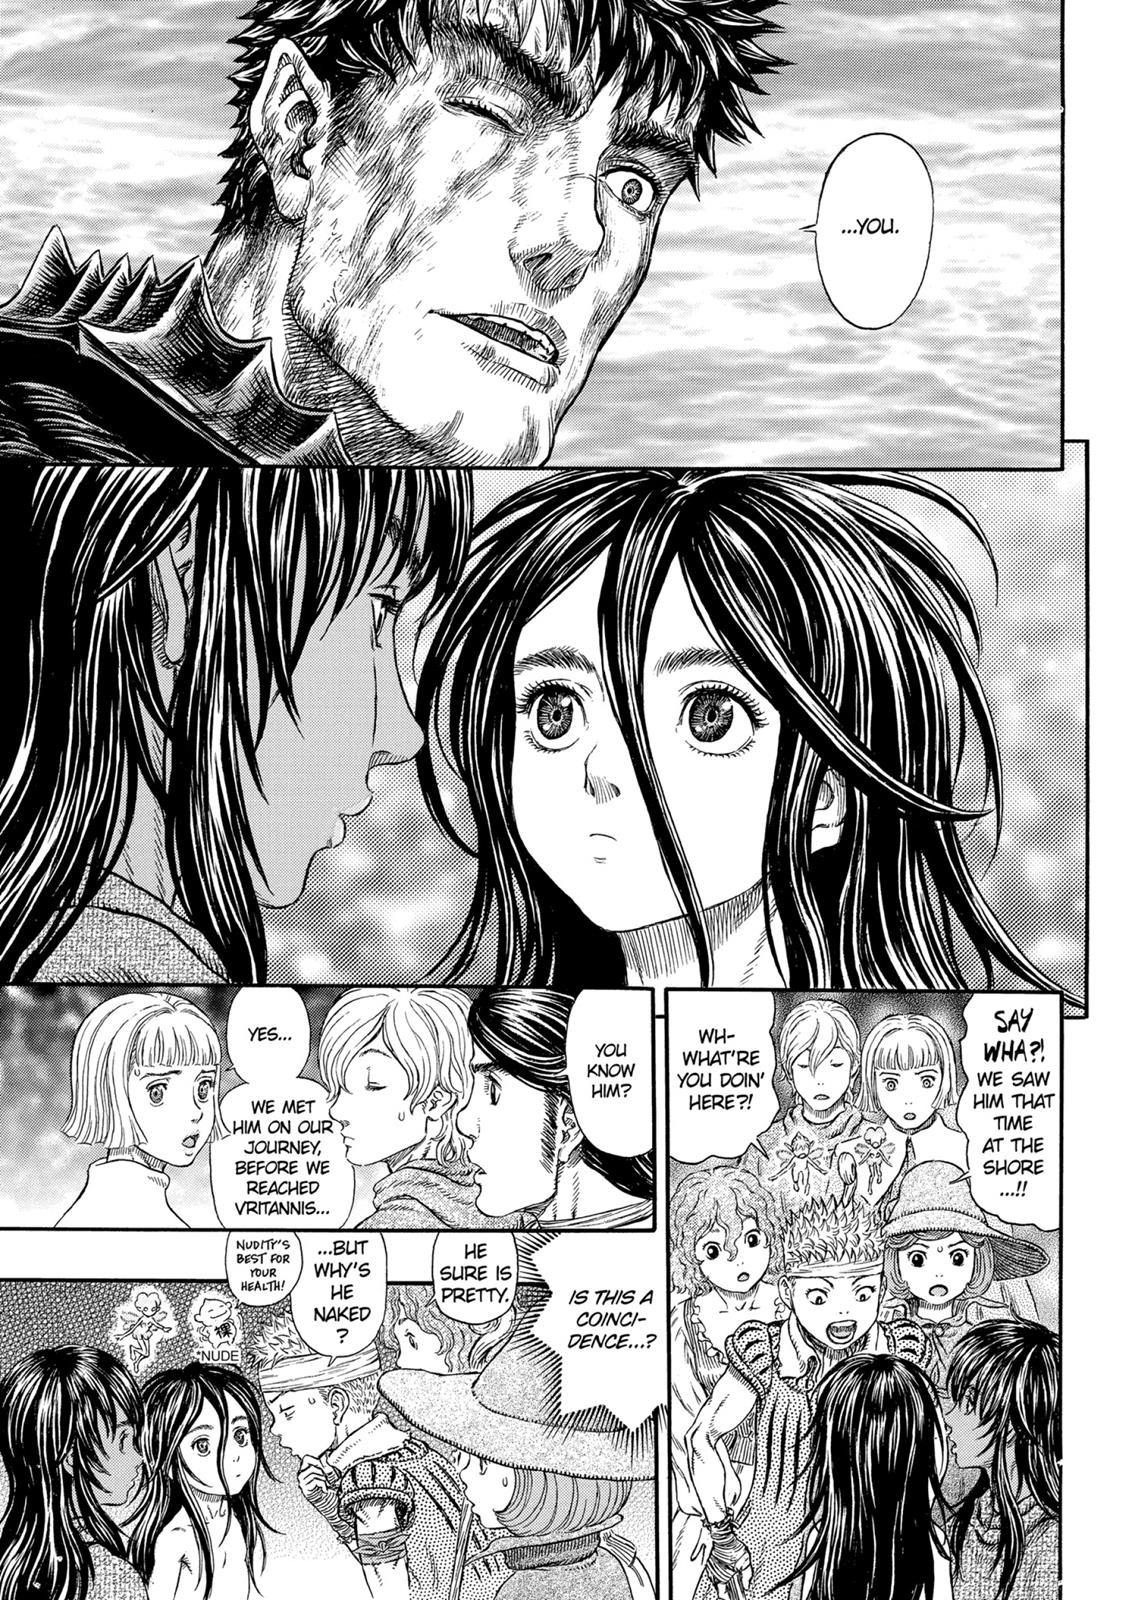 Berserk Manga Chapter 317 image 12